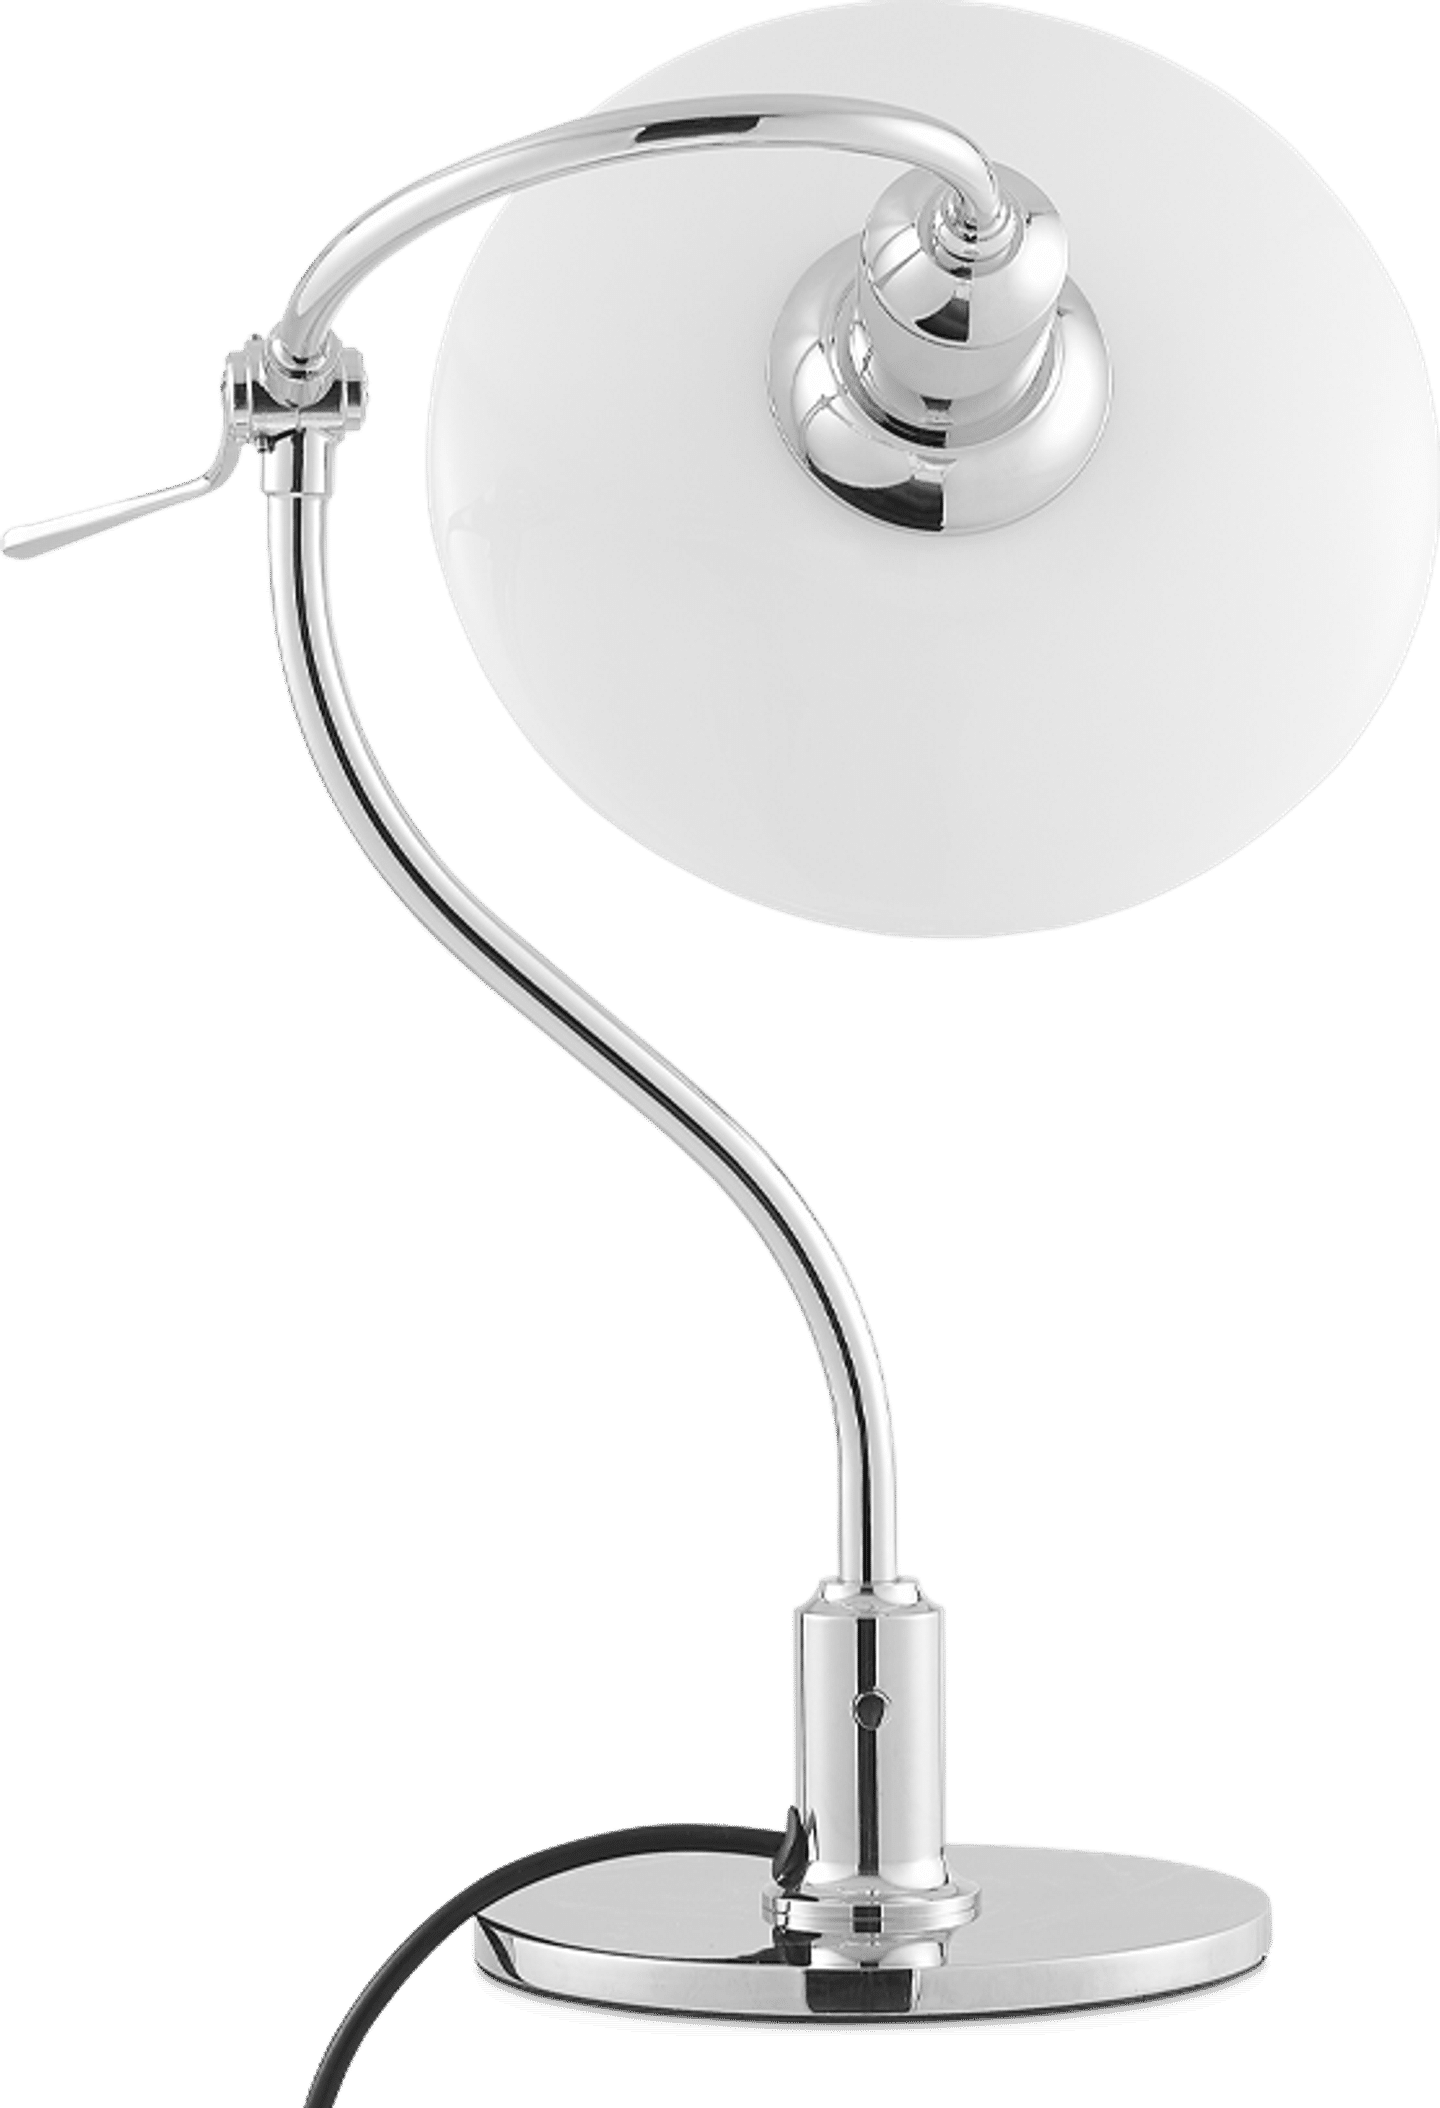 PH 2-2 Lámpara de mesa estilo signo de interrogación Chrome image.